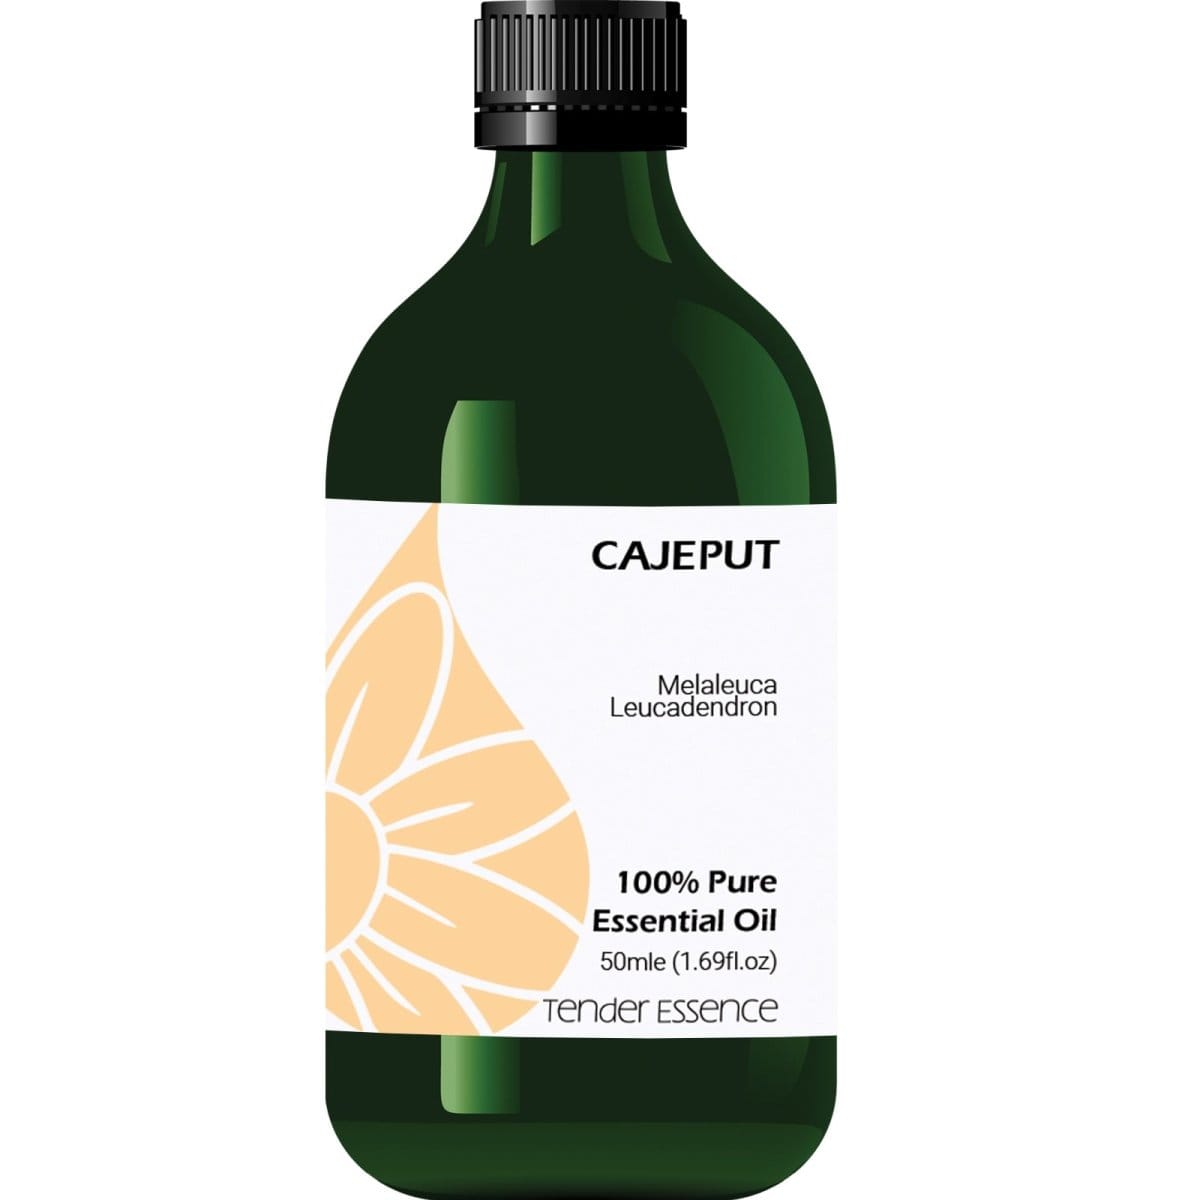 Cajeput Pure Essential Oil - Tender Essence